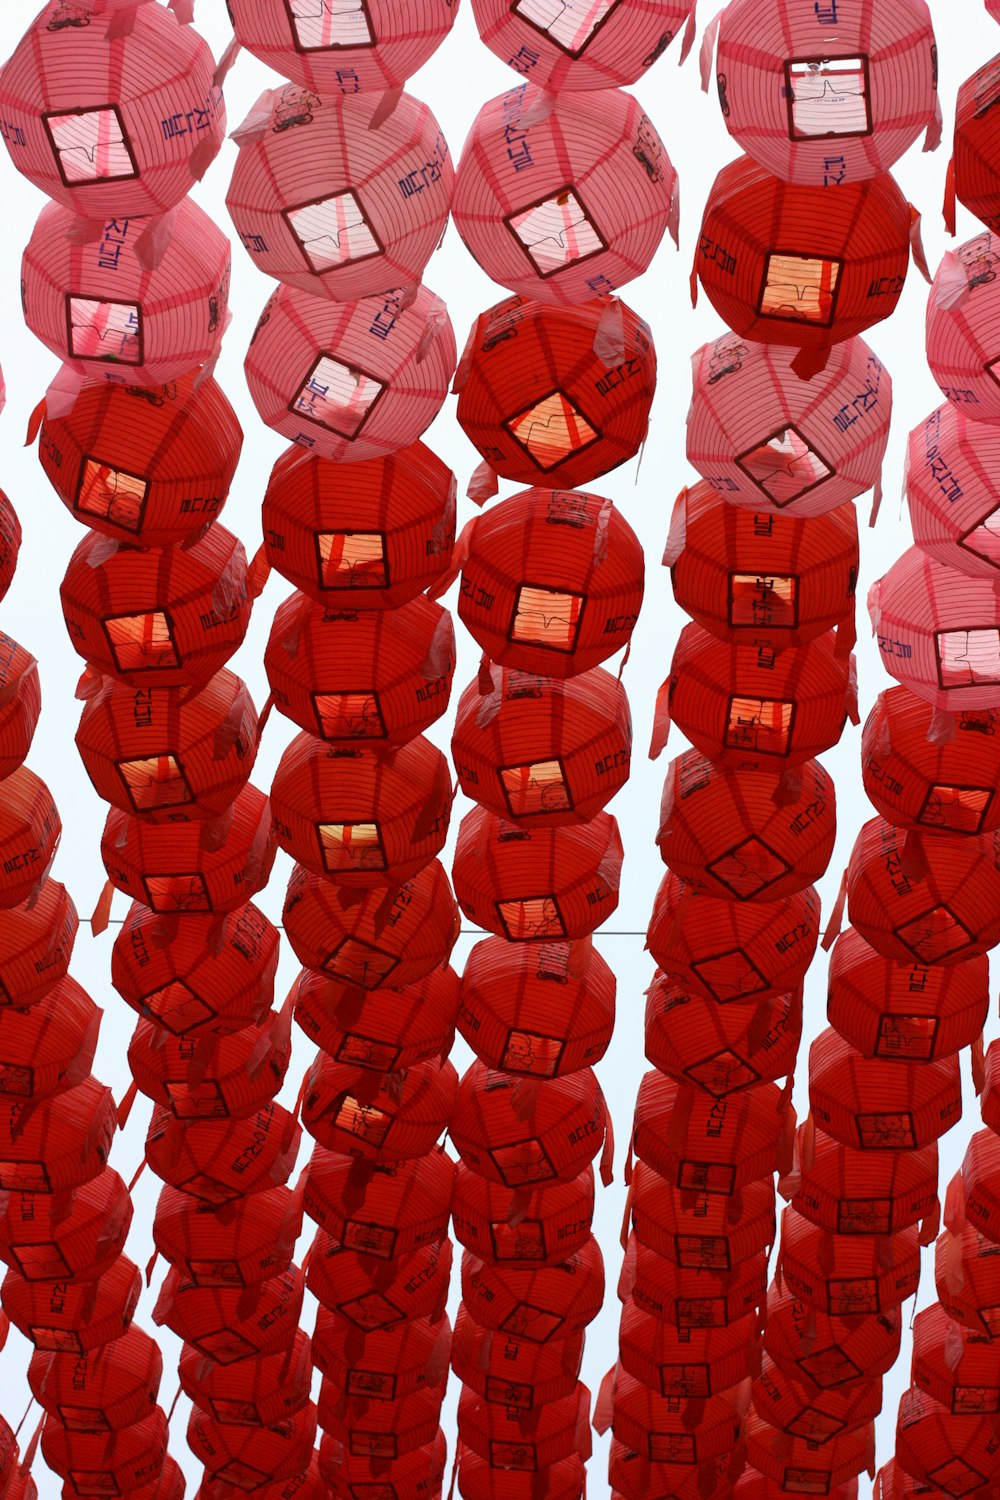 red paper lantern lot during daytime